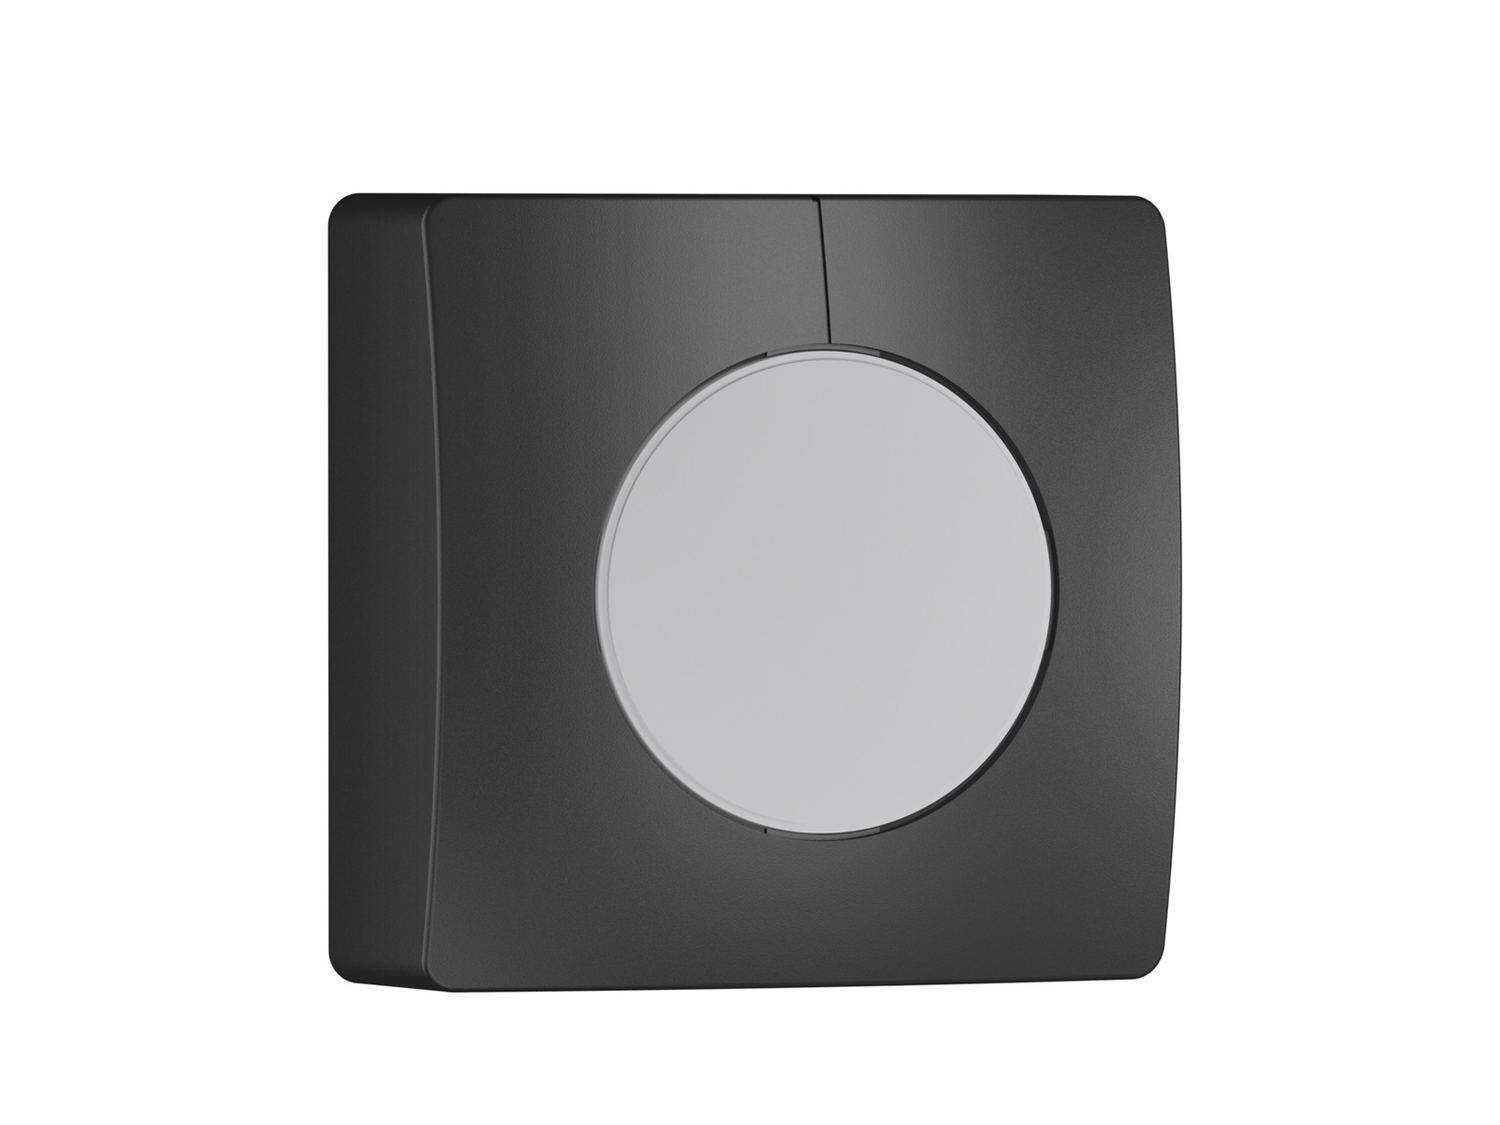 Soumrakový senzor NightMatic 5000-3 COM1 černý